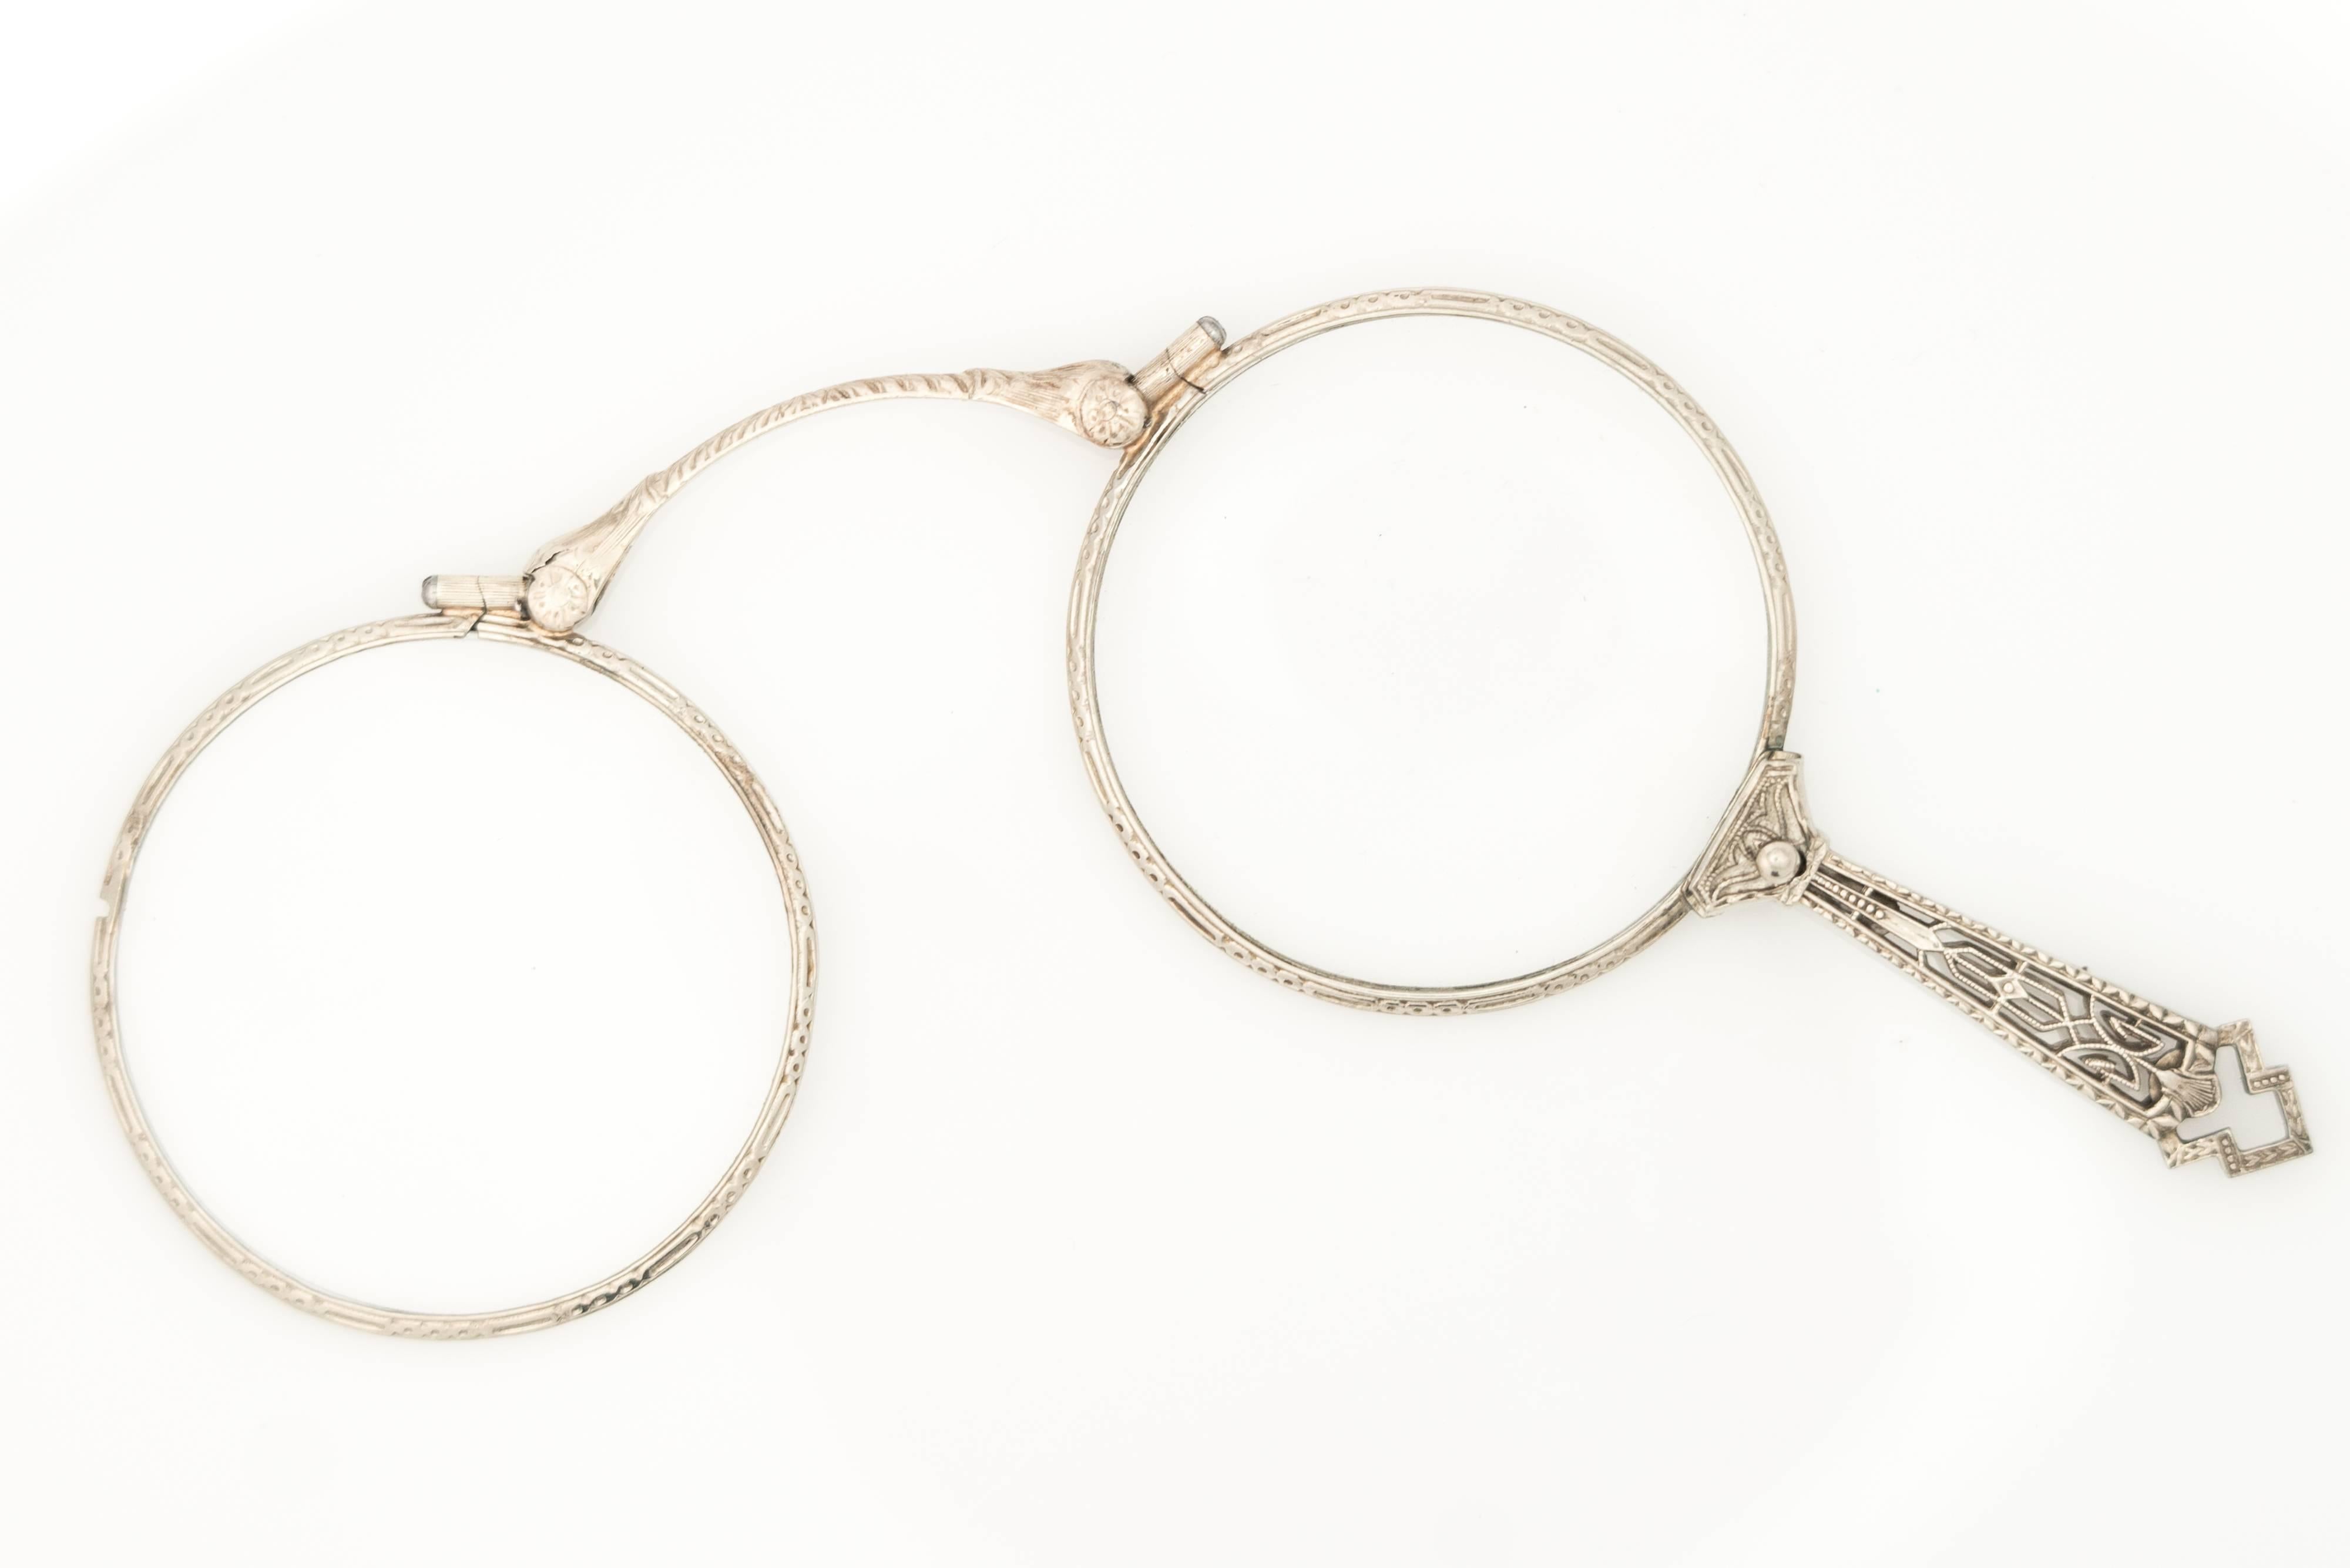 Diese atemberaubende faltbare 14 Karat Weißgold Lorgnette Brille aus den 1920er Jahren verfügt über 2 Gläser, die sich übereinander falten und einrasten lassen, um ein Vergrößerungsglas zu bilden. Ein kleiner Zughebel am oberen Ende des Griffs gibt